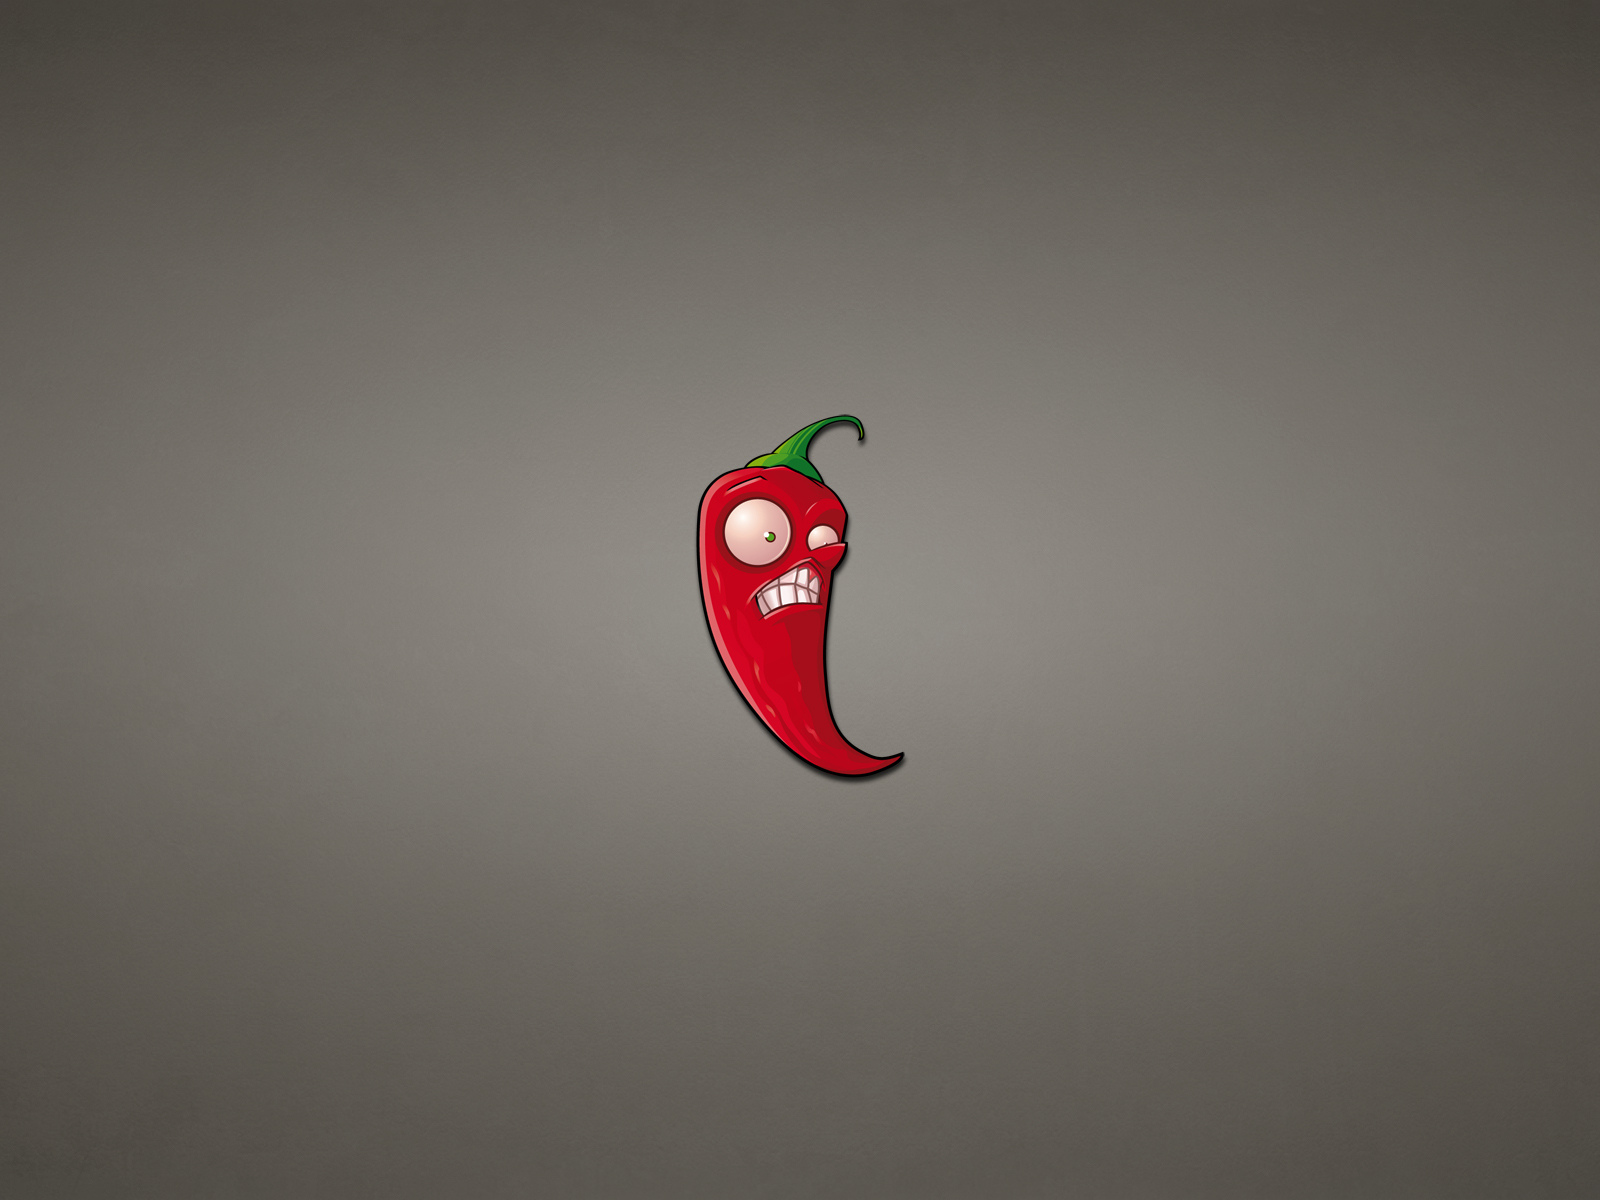 чили, темноватый фон, перец, красный, pepper, минимализм